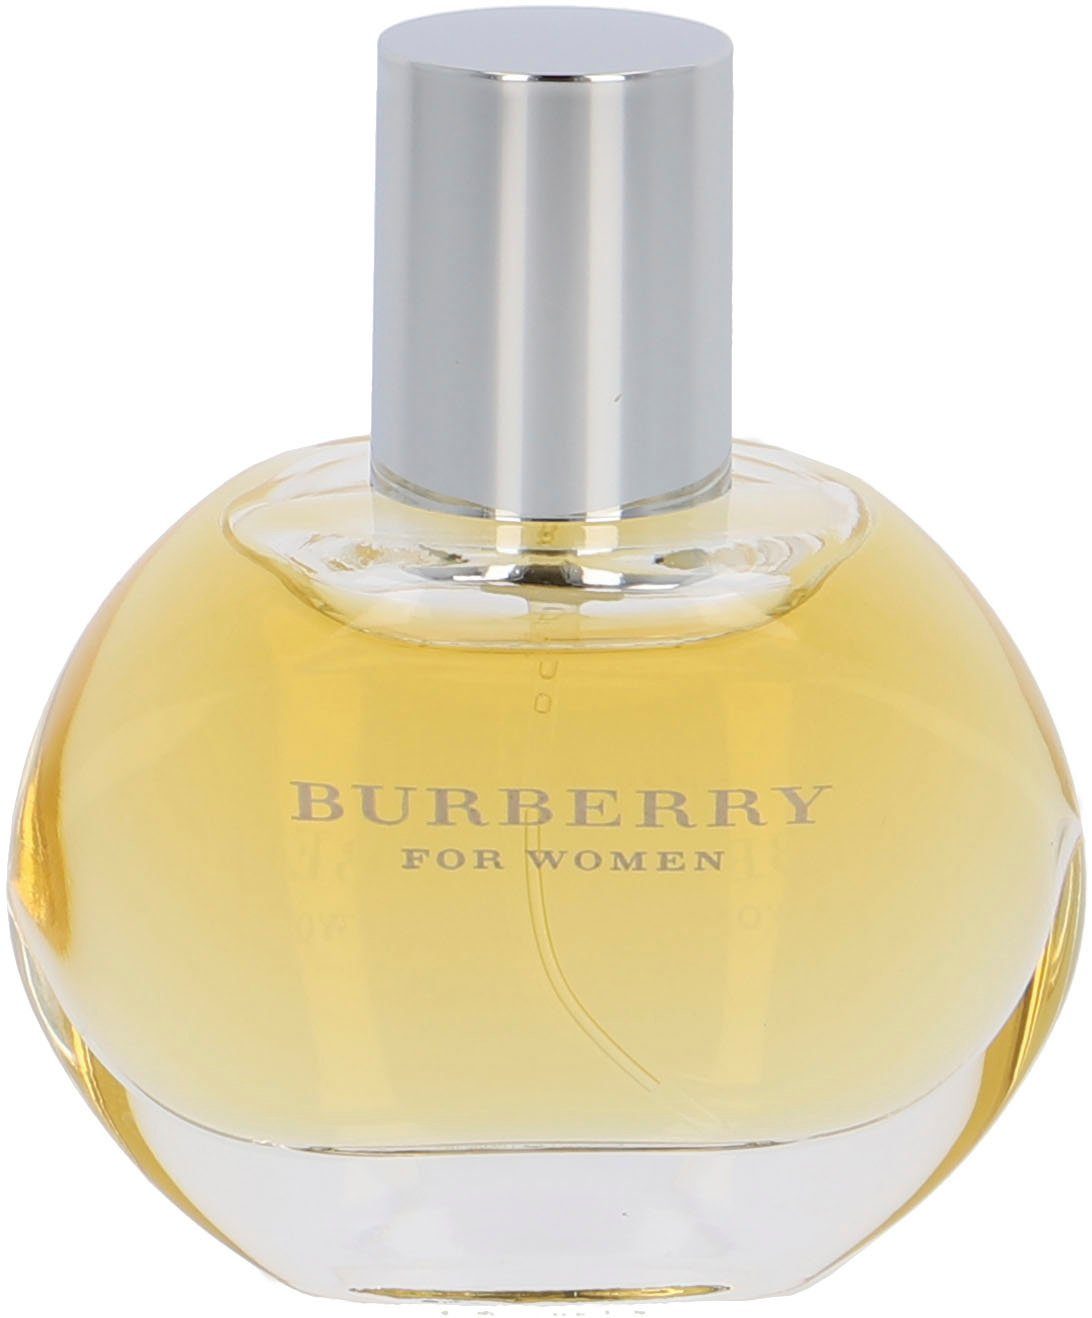 Classic Burberry Eau Parfum Women BURBERRY de